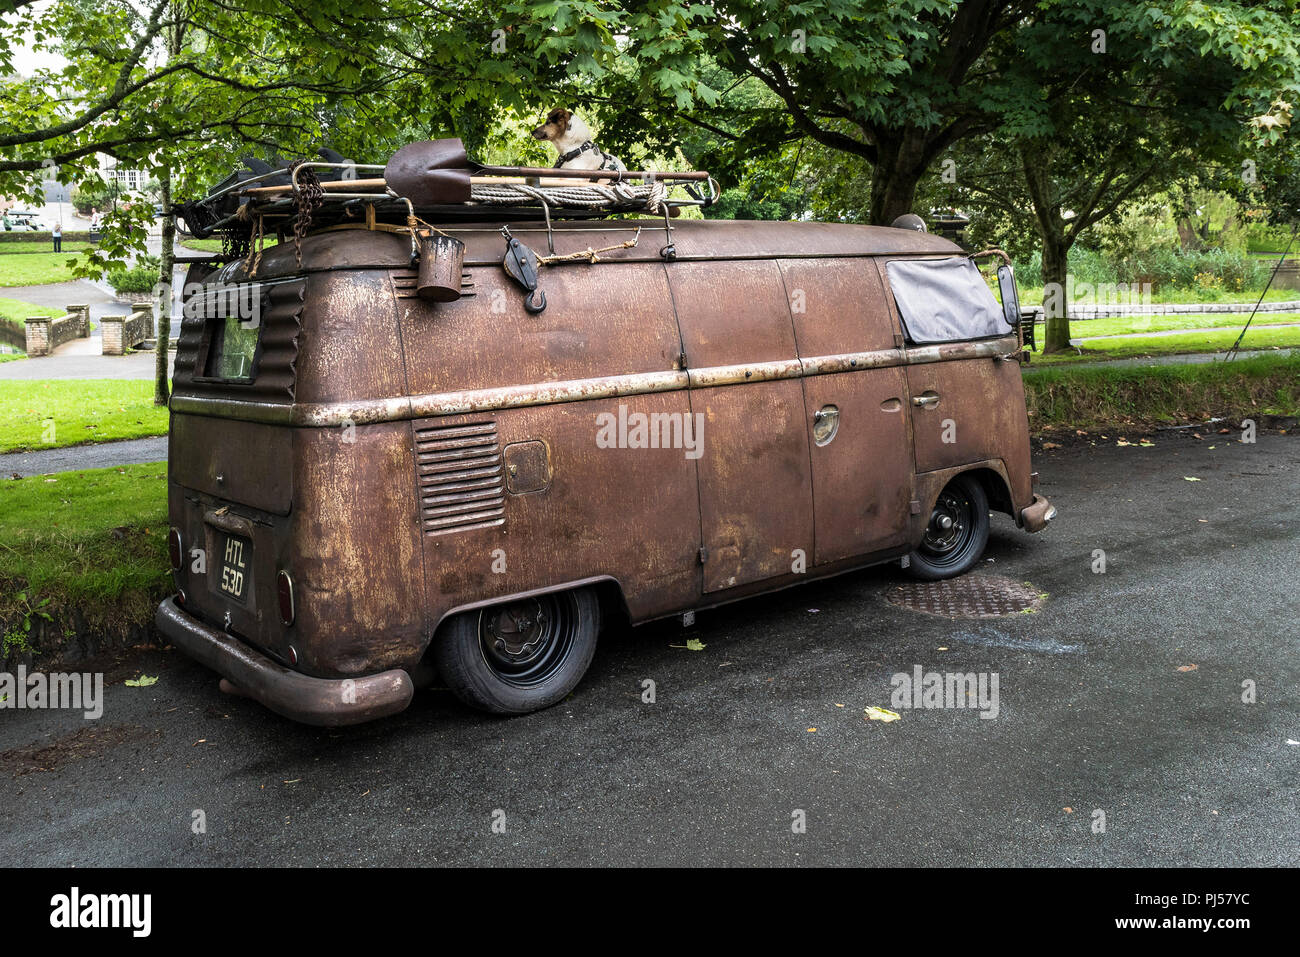 Un vintage rat look Volkswagen camping-car garé au bord de la route i Newquay à Cornwall. Banque D'Images